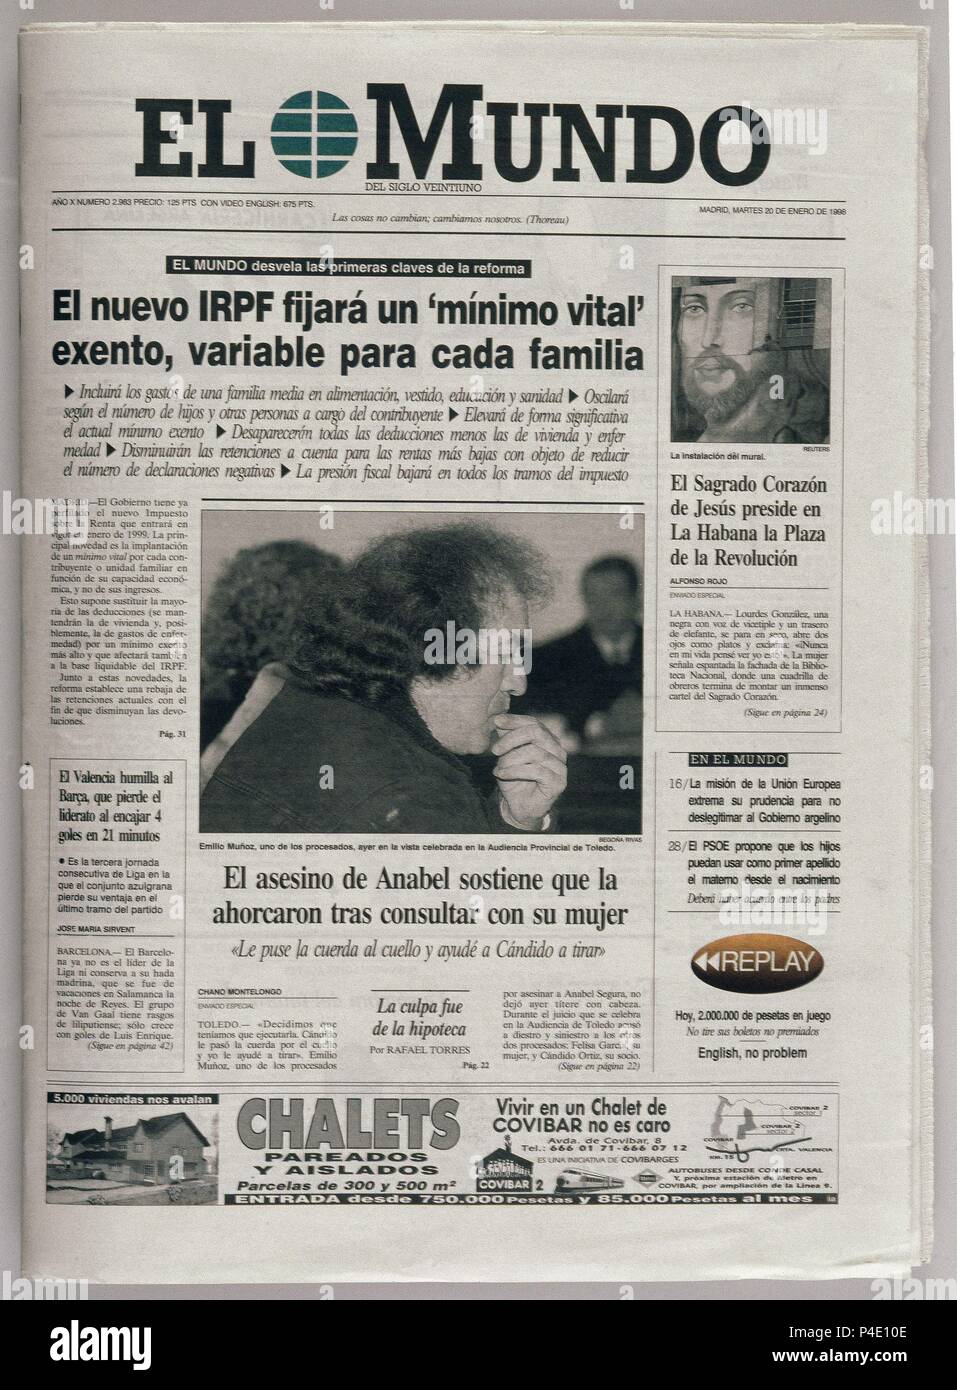 PERIODICO EL MUNDO - PORTADA - 20/01/98 - "EL NUEVO IRPF Stock Photo - Alamy